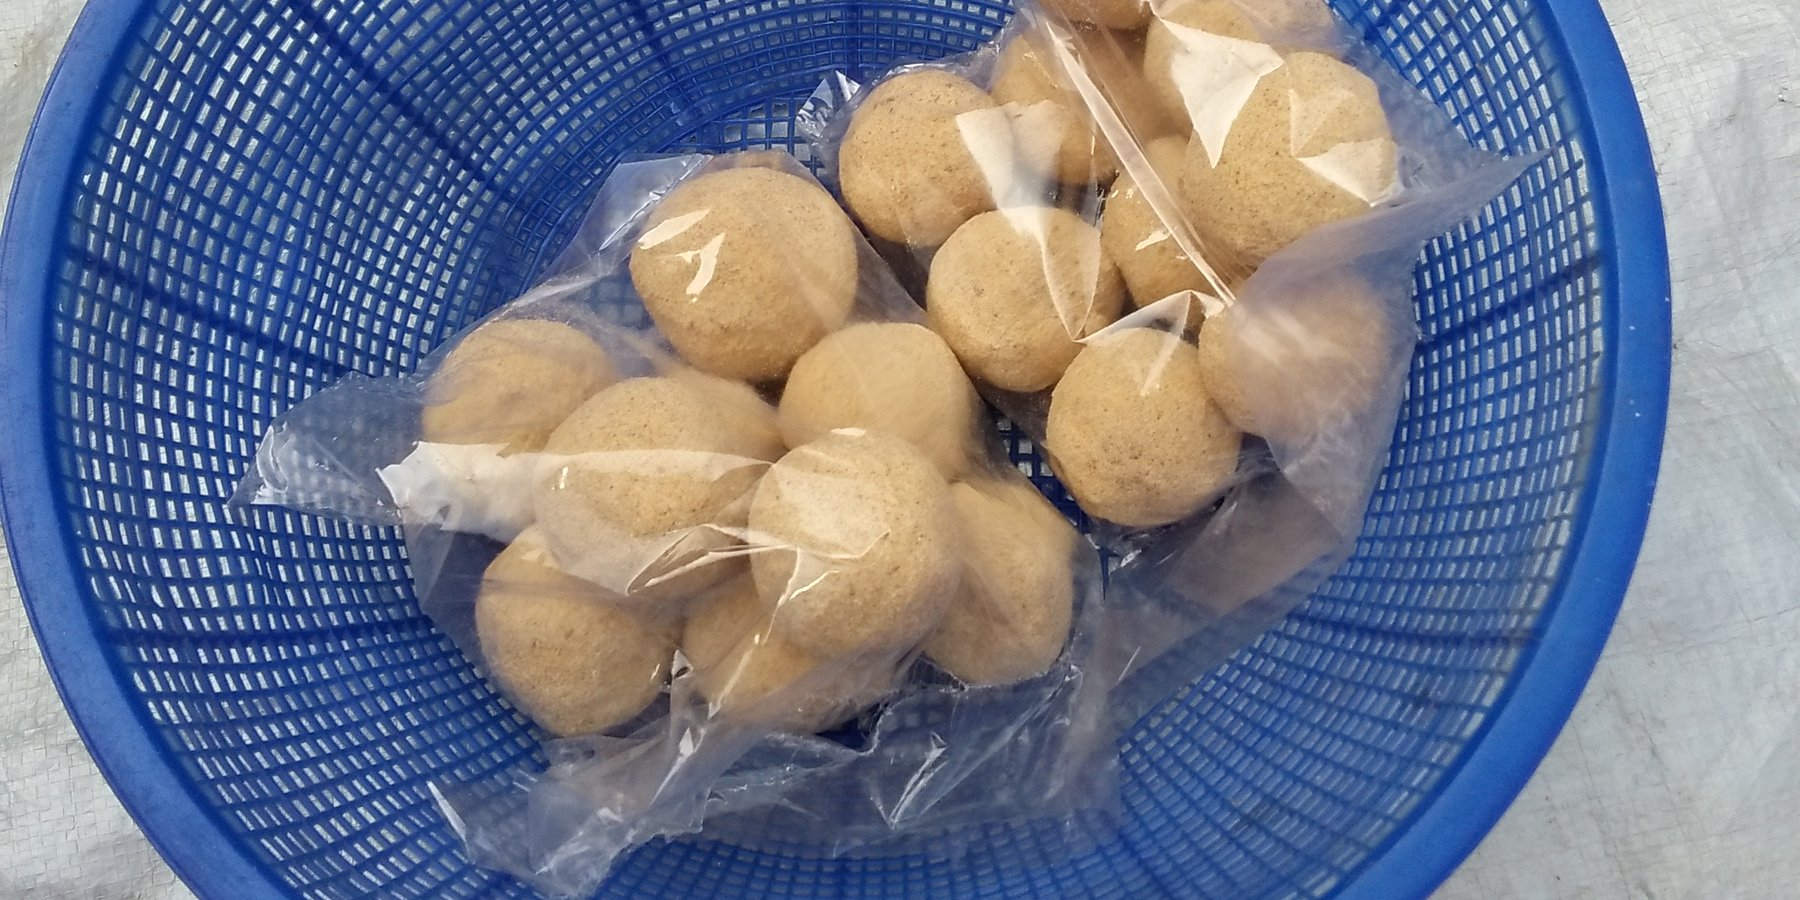 Deshi Horlicks (Local Horlicks) in the form of balls.